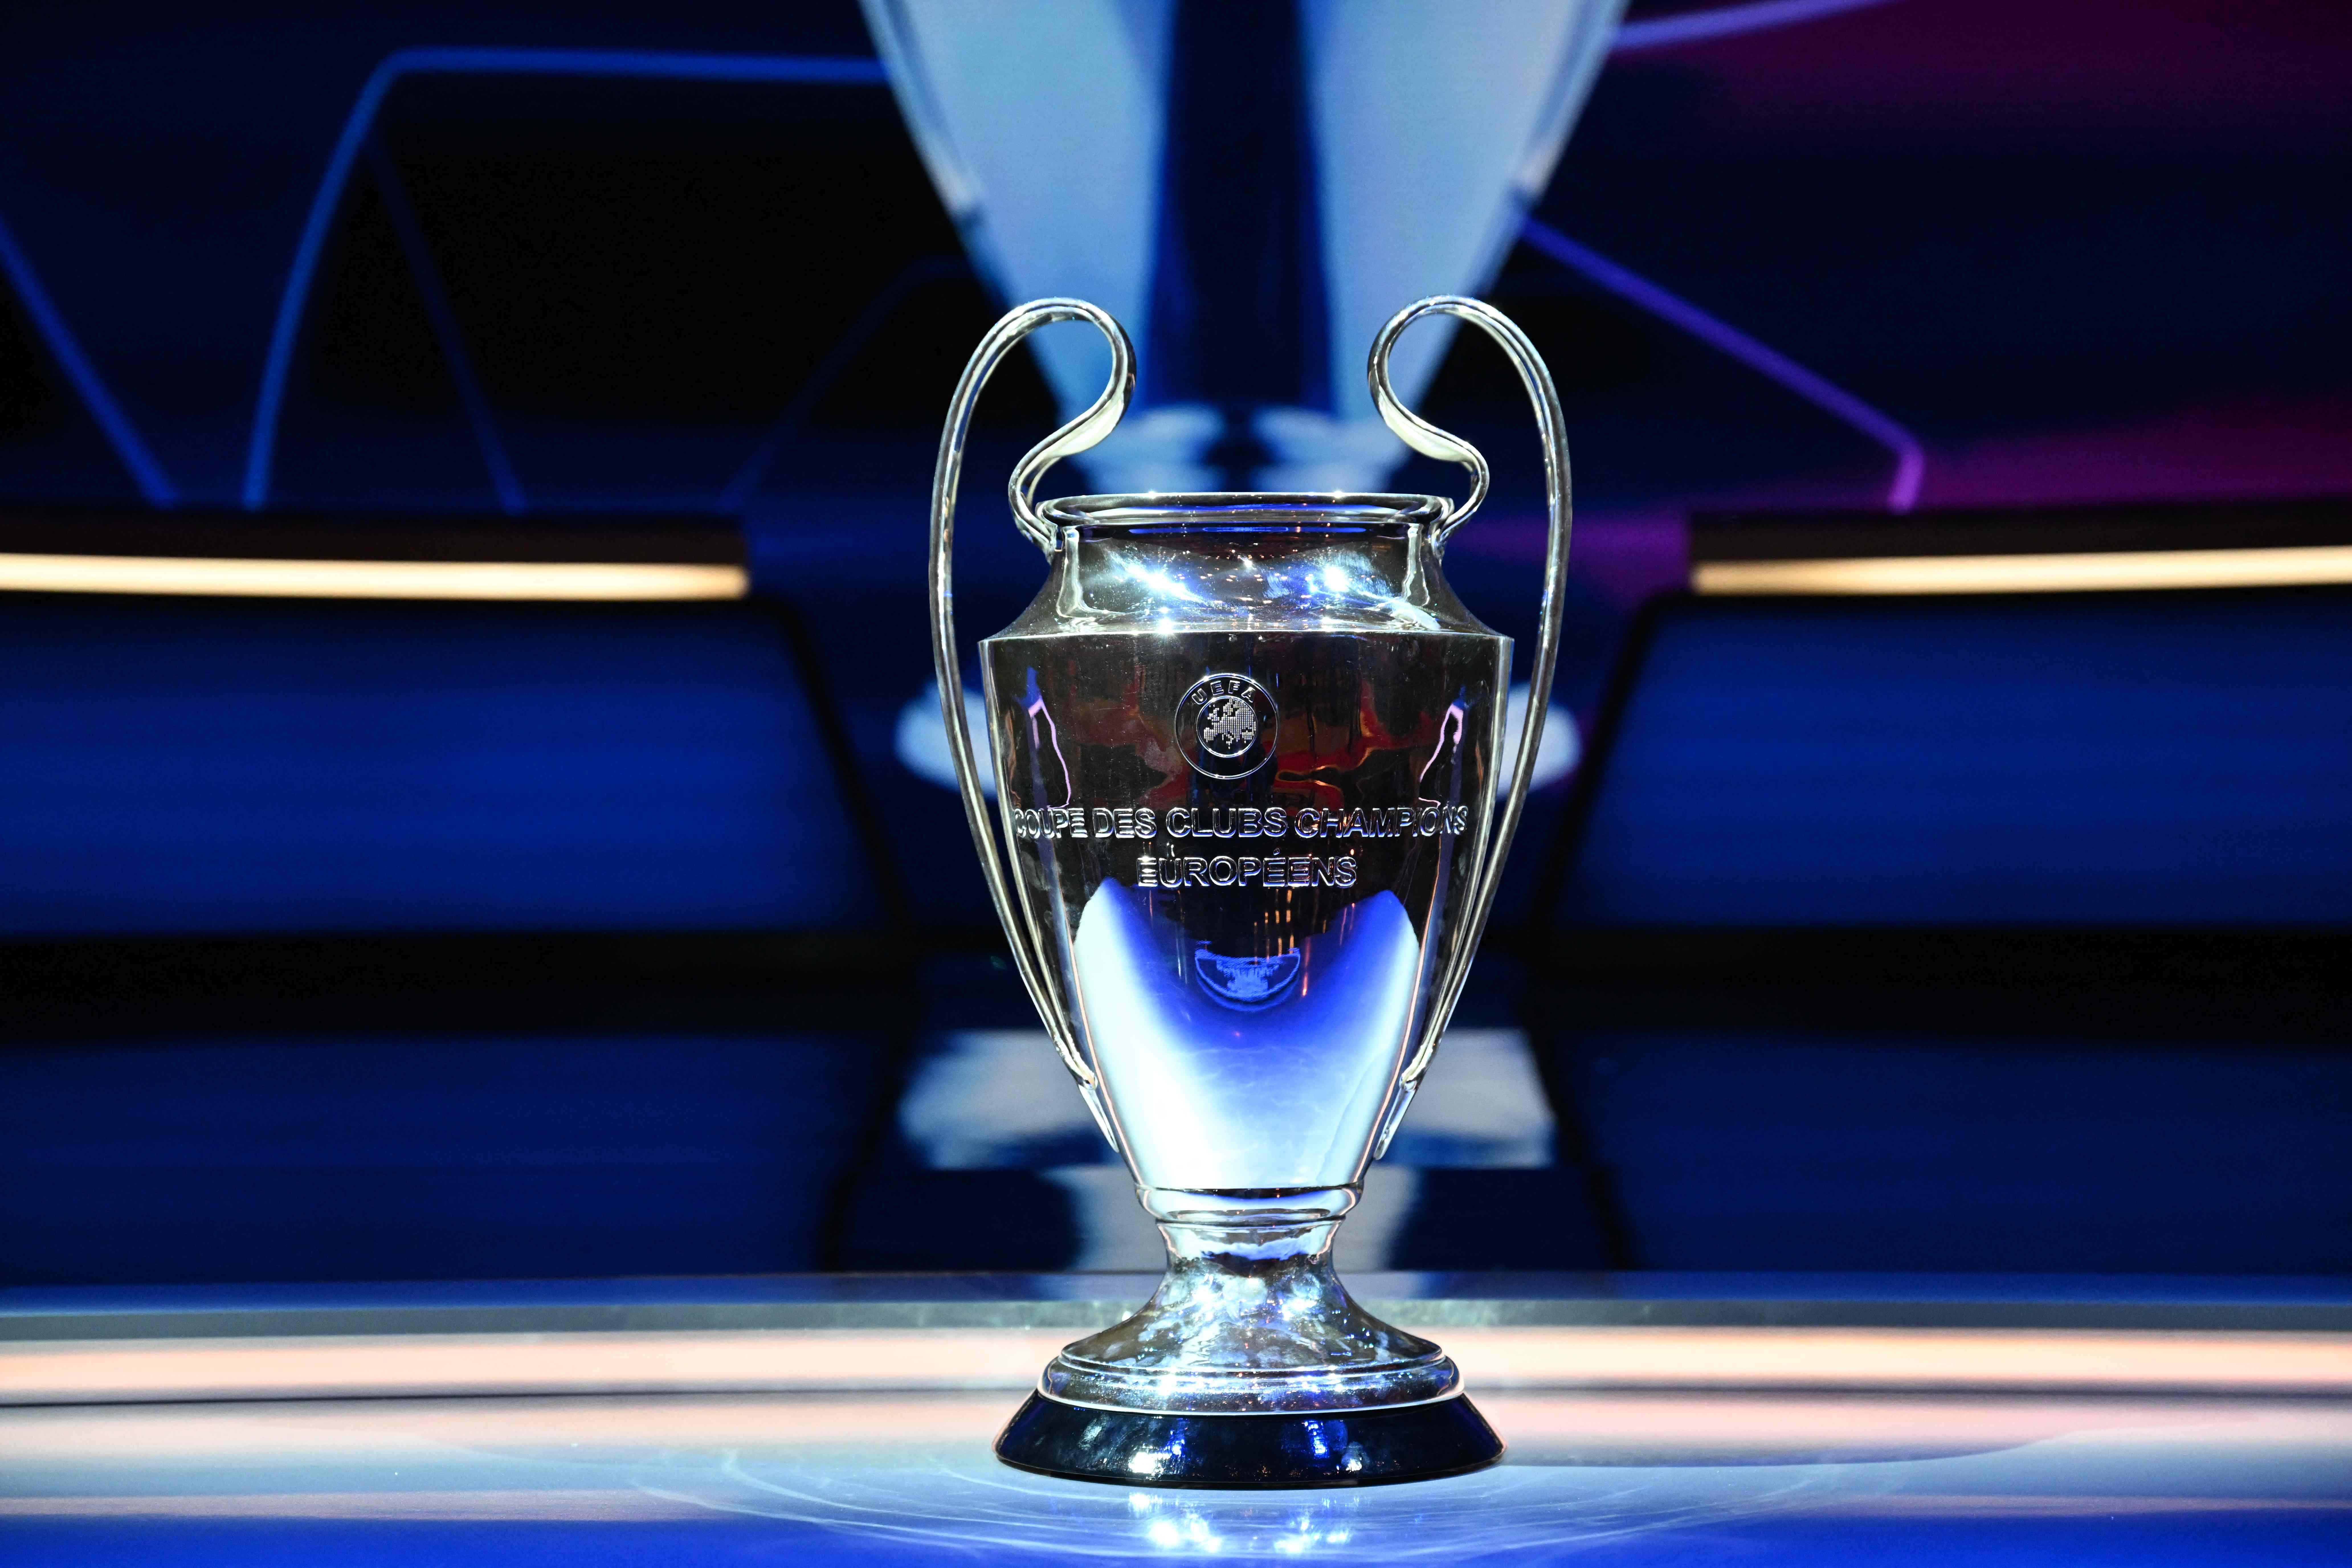 Champions League 2022/23: saiba onde ver os jogos da semana